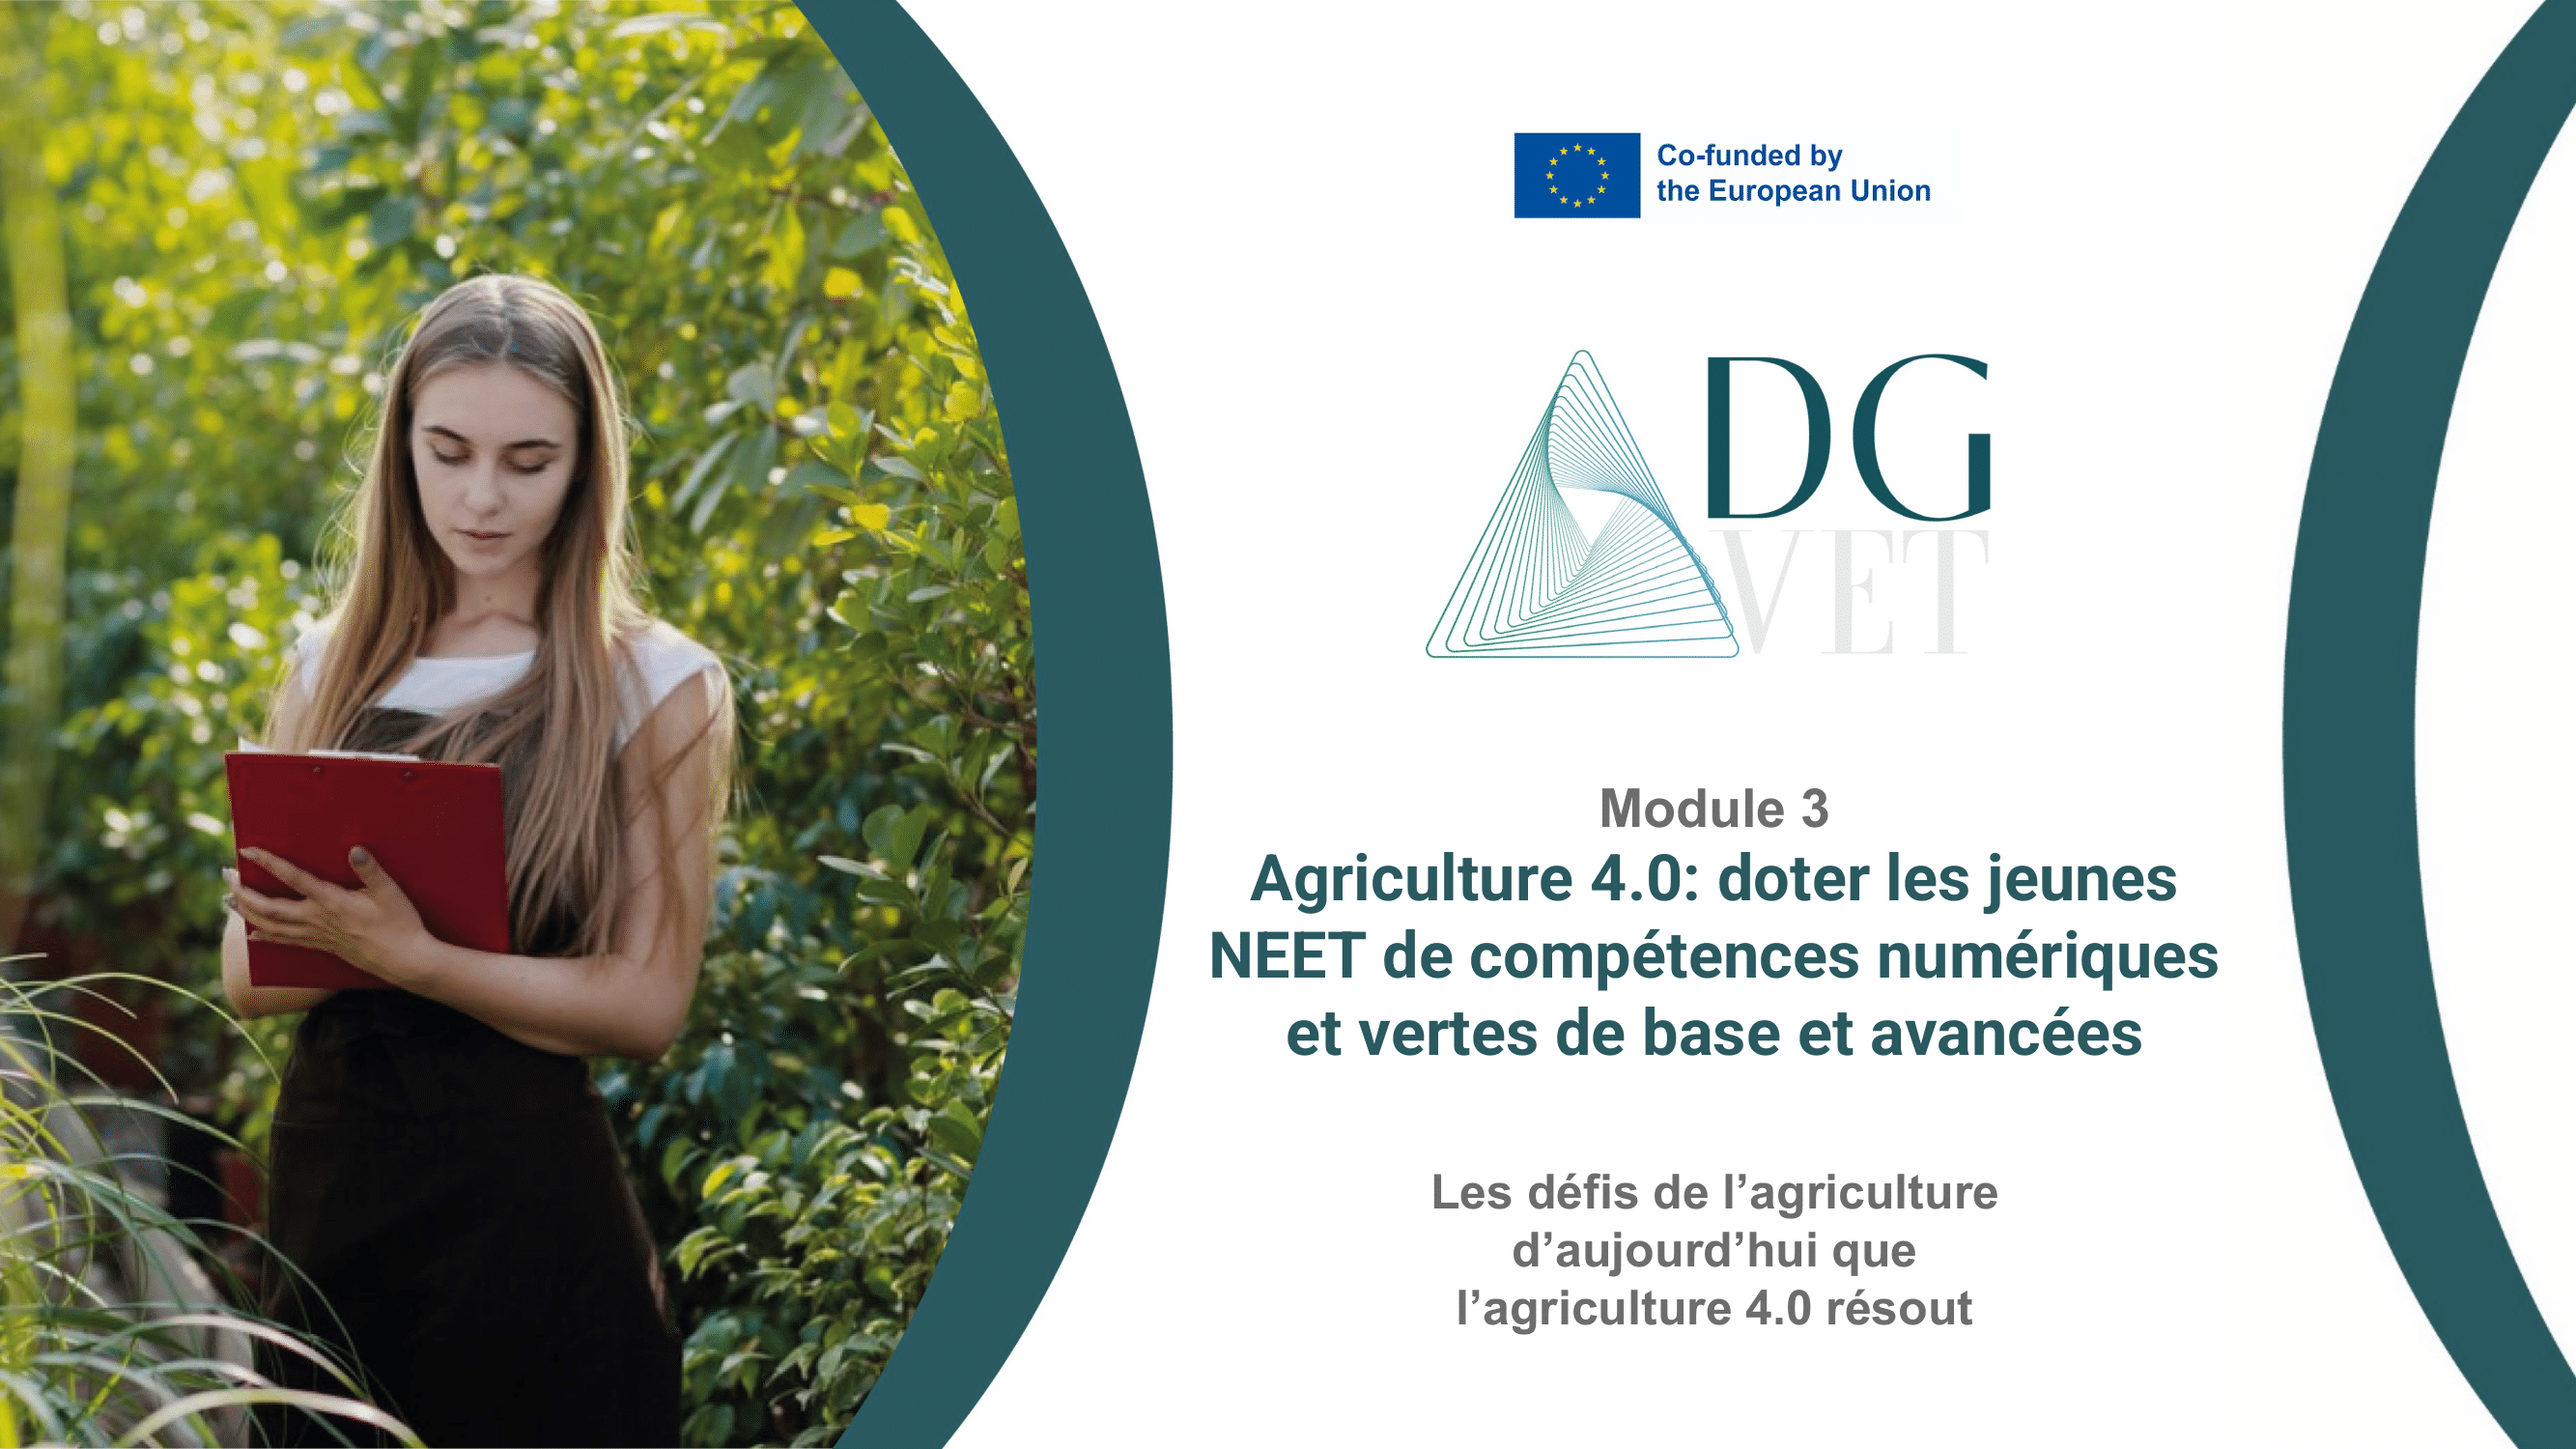 Module 3 “Les défis de l’agriculture d’aujourd’hui que l’agriculture 4.0 peut résoudre”.